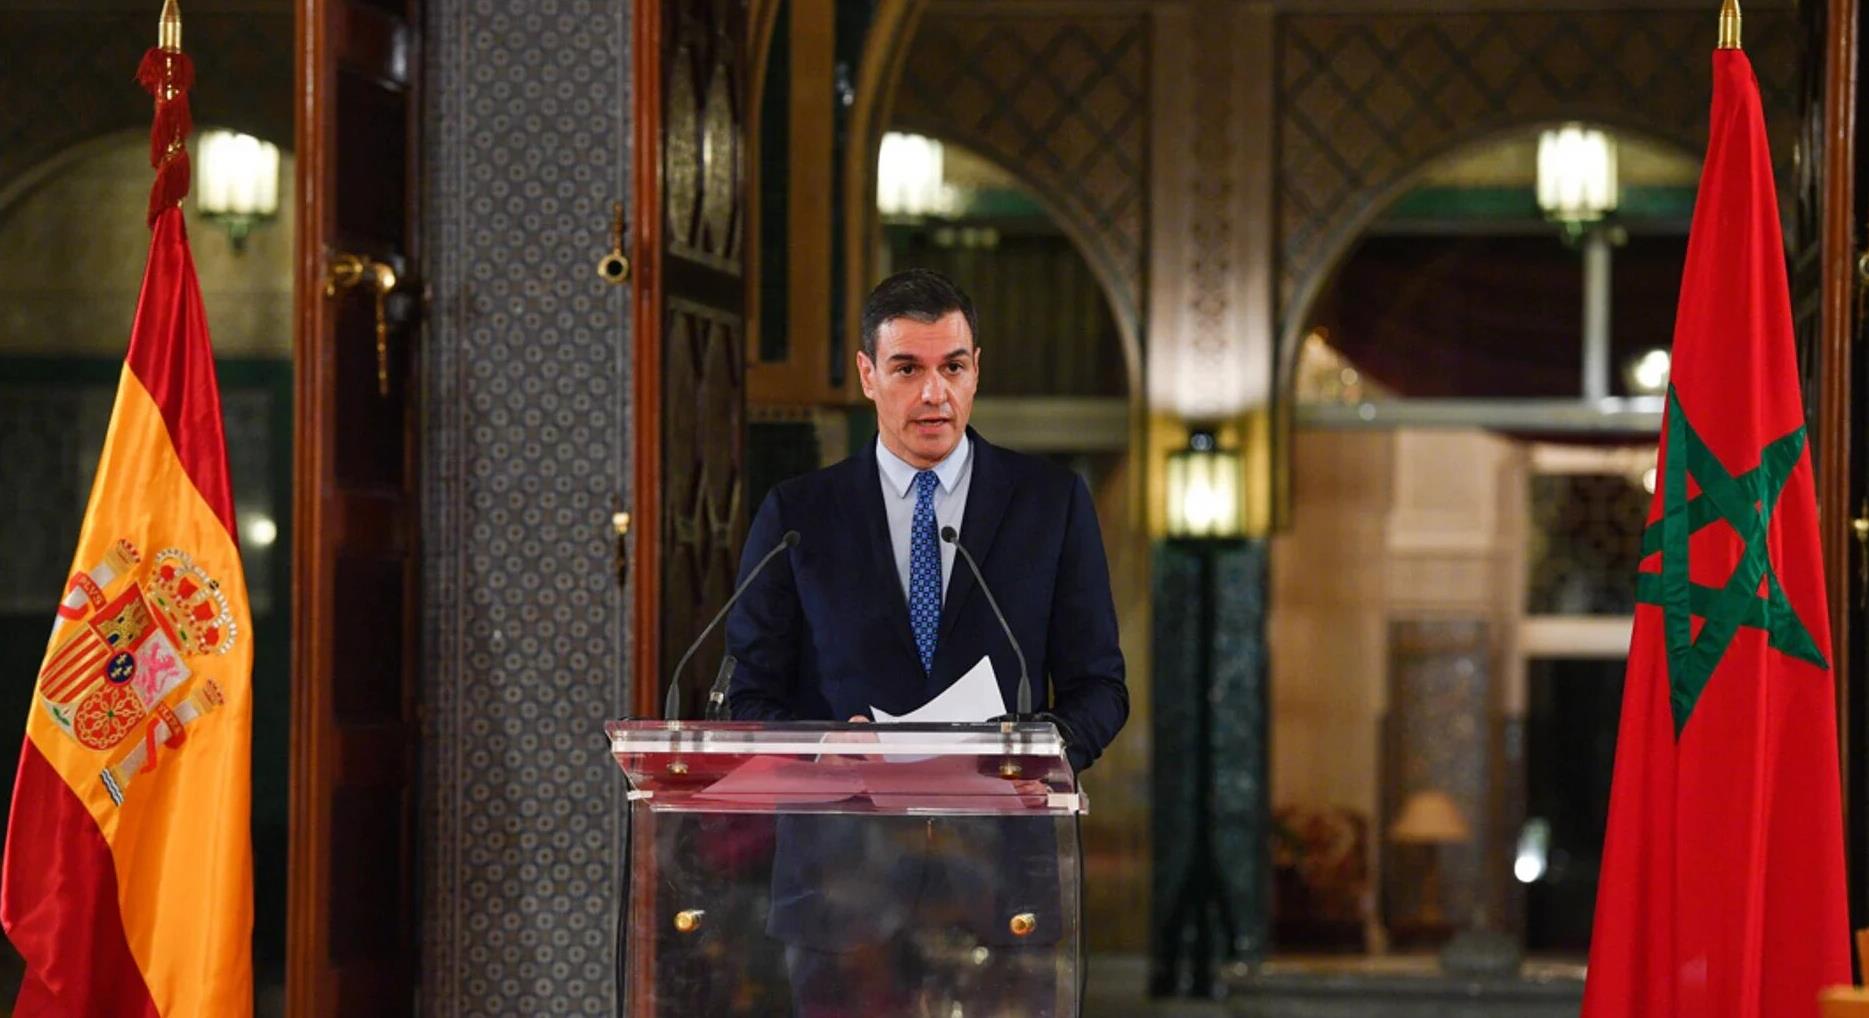 Sahara marocain : Sanchez réitère la position de l'Espagne en faveur du plan d'autonomie